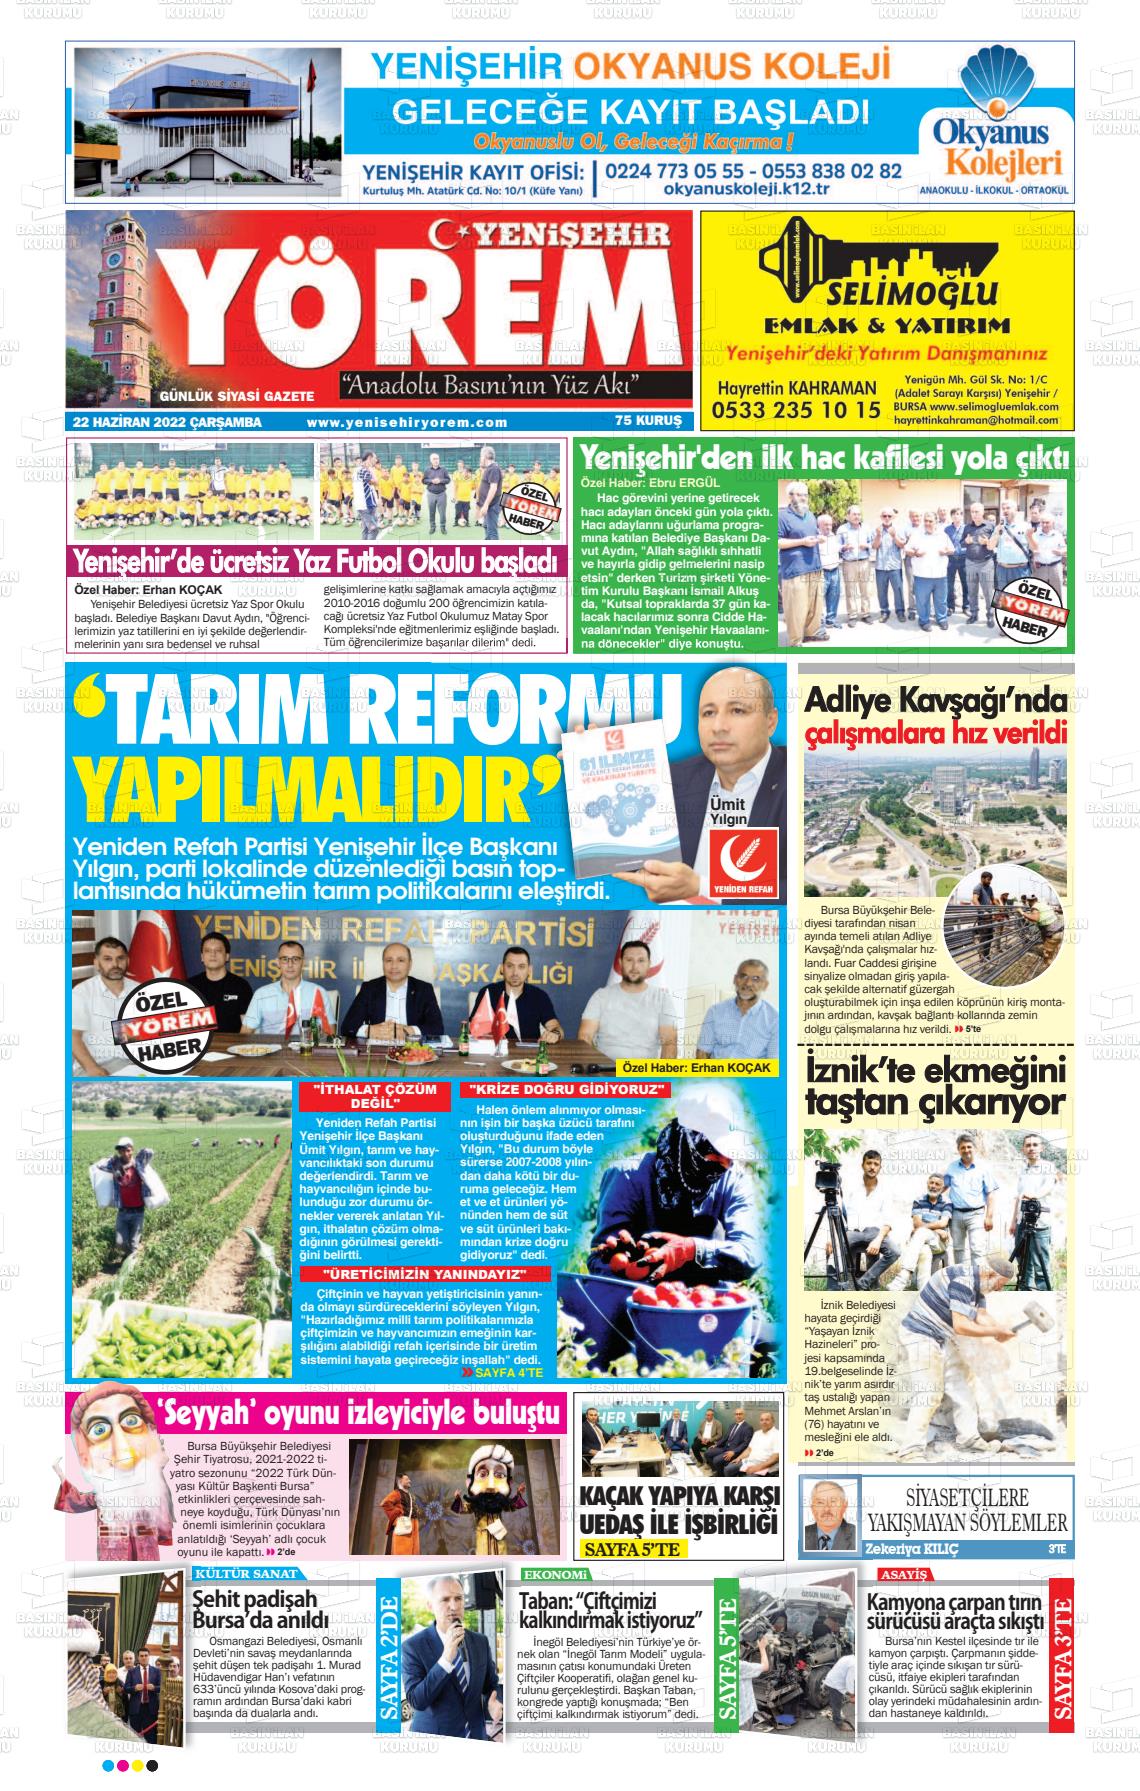 22 Haziran 2022 Yenişehir Yörem Gazete Manşeti